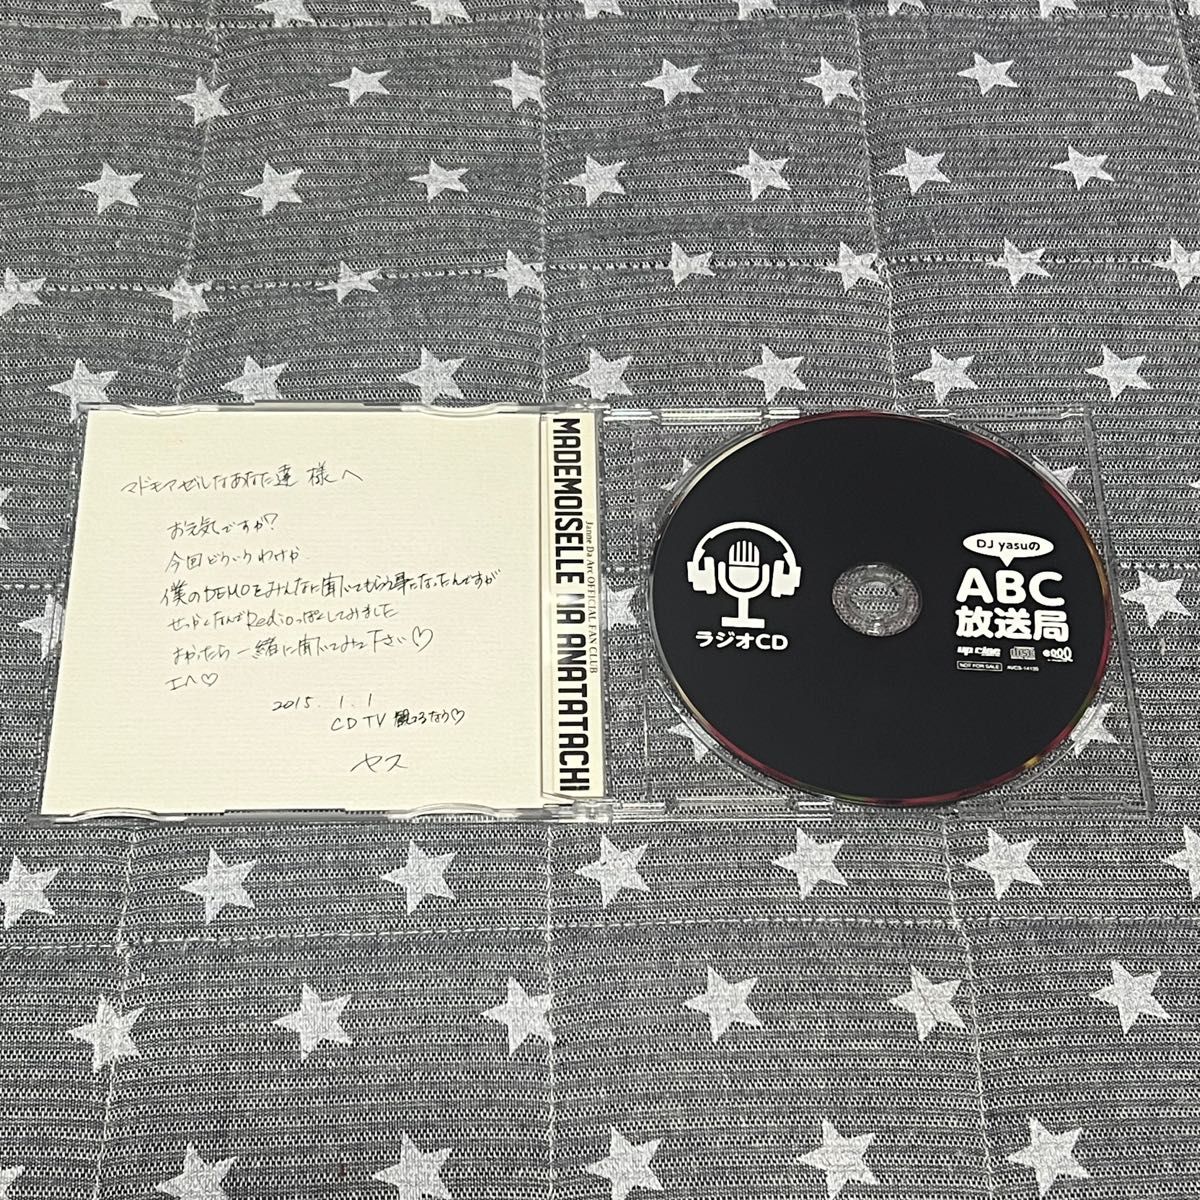 ラジオCD「DJ yasuのABC放送局」